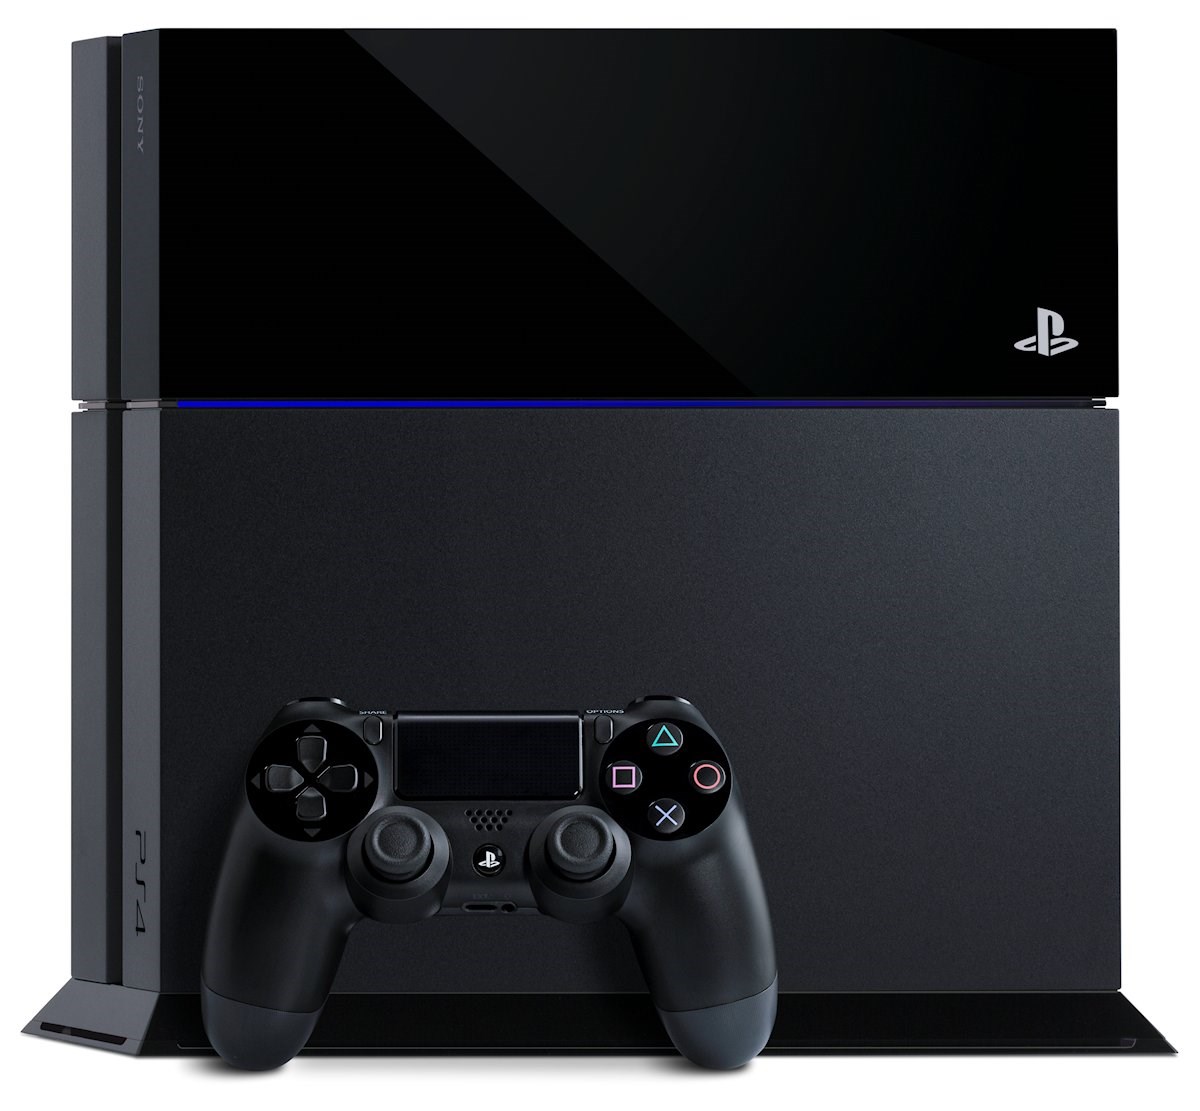 Pigment Se igennem i tilfælde af PlayStation 4 - Spørgsmål og svar - recordere.dk